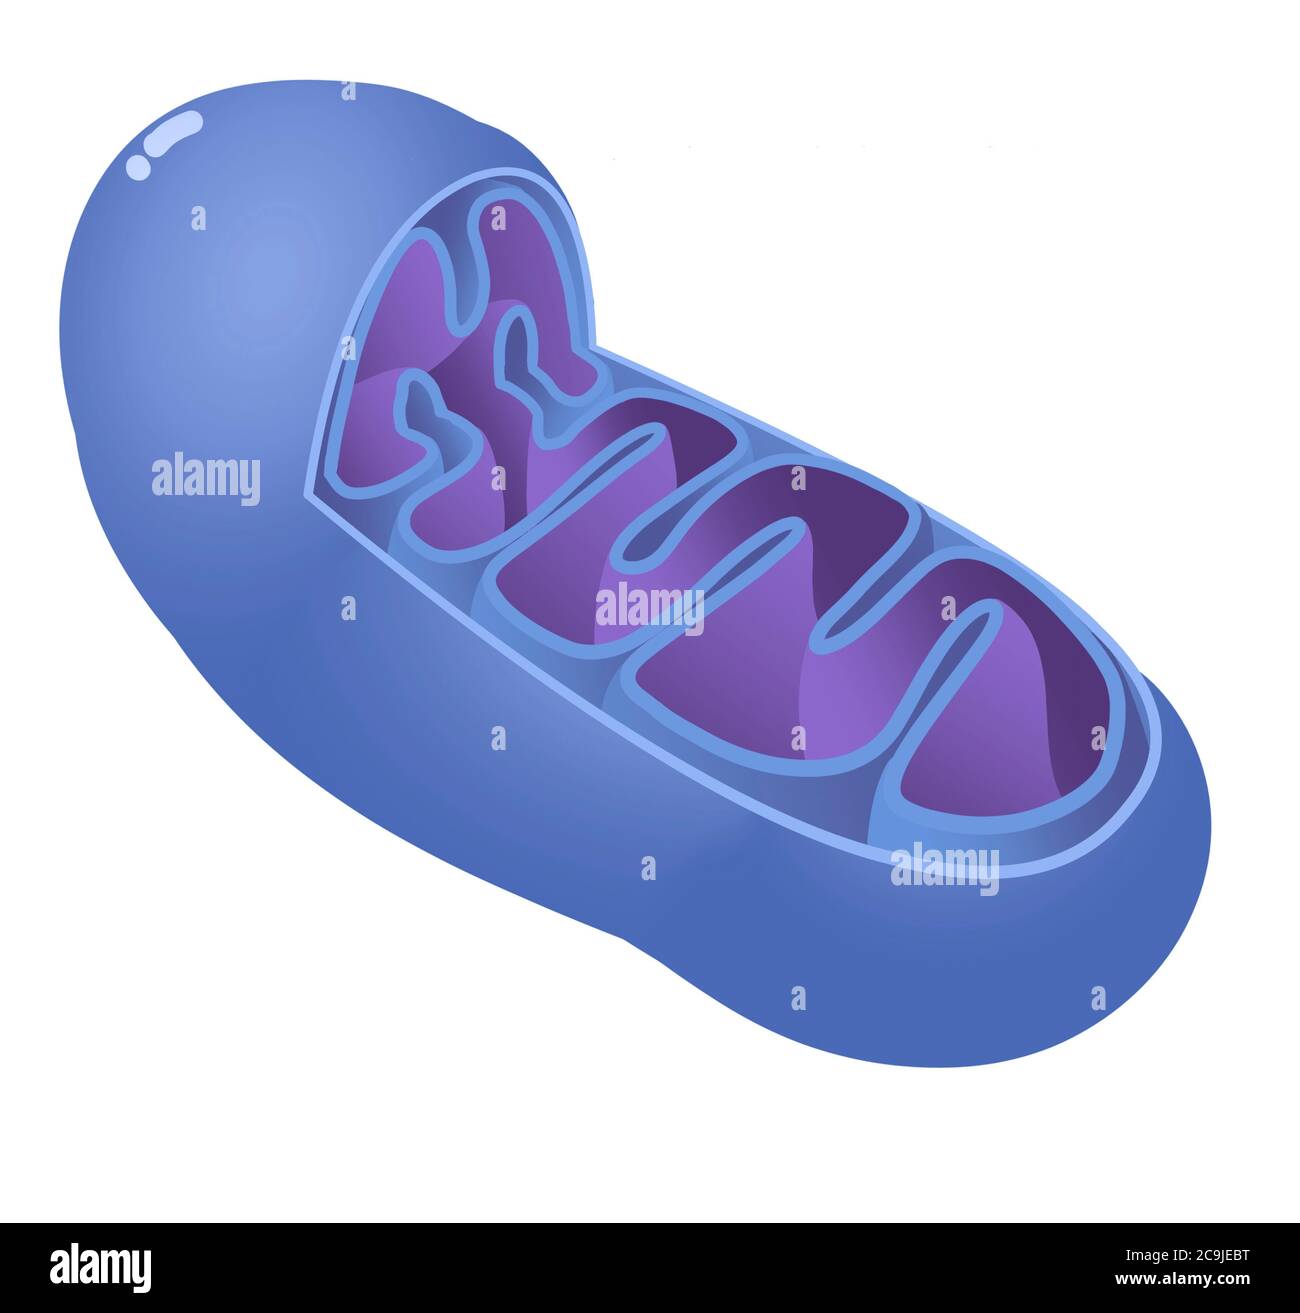 Illustrazione del computer che mostra un mitocondrio. Si osservano la membrana esterna, la membrana interna e le cristae (pieghe). Foto Stock